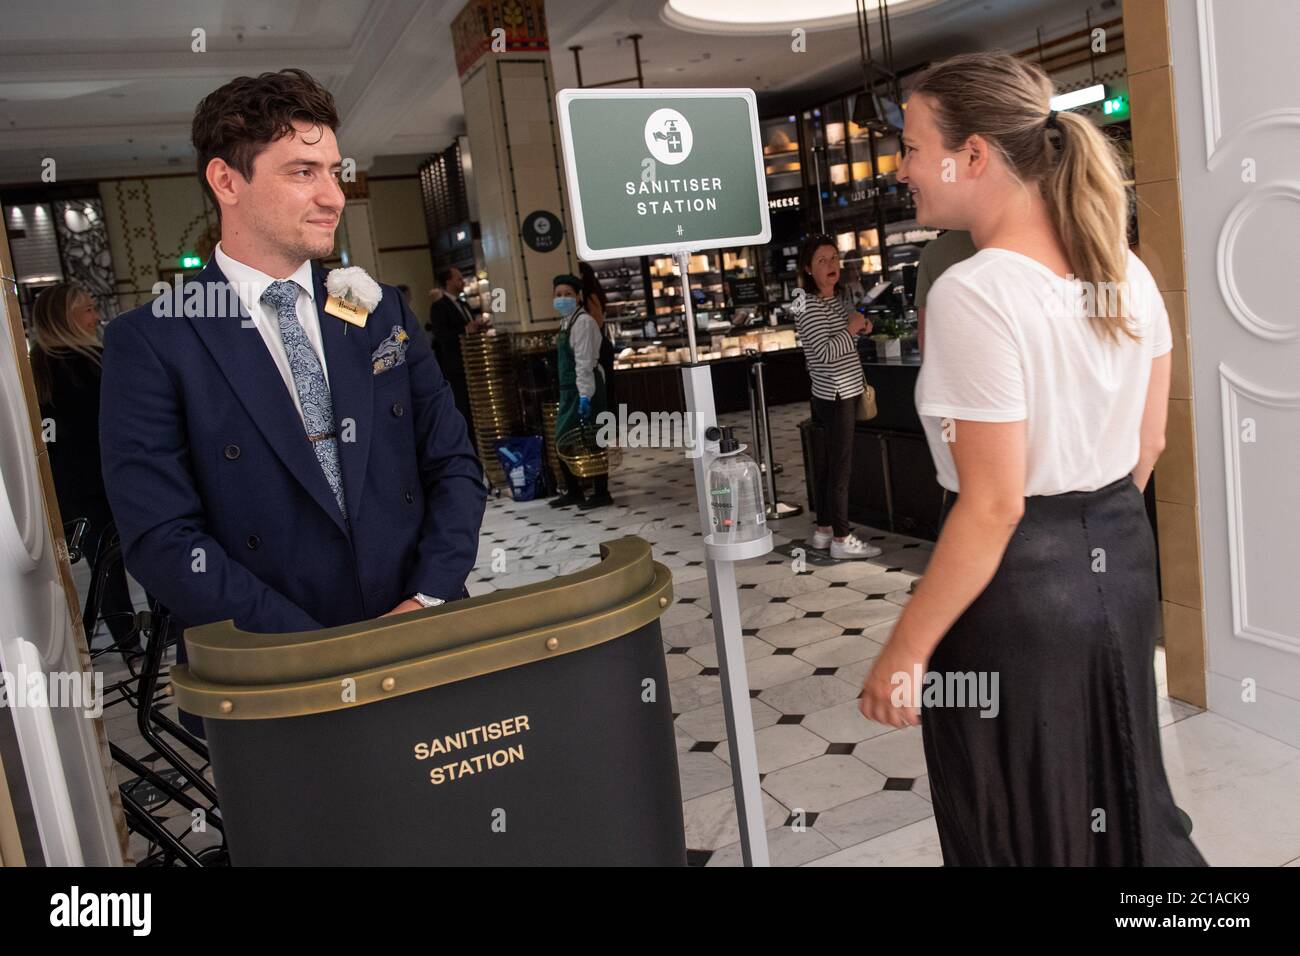 Mitarbeiter Willkommen Kunden zurück in Harrods Geschäft in Knightsbridge, London, wie es seine Türen öffnet, nachdem die Regierung angekündigt, dass nicht-wesentliche Geschäfte wieder öffnen können. Stockfoto